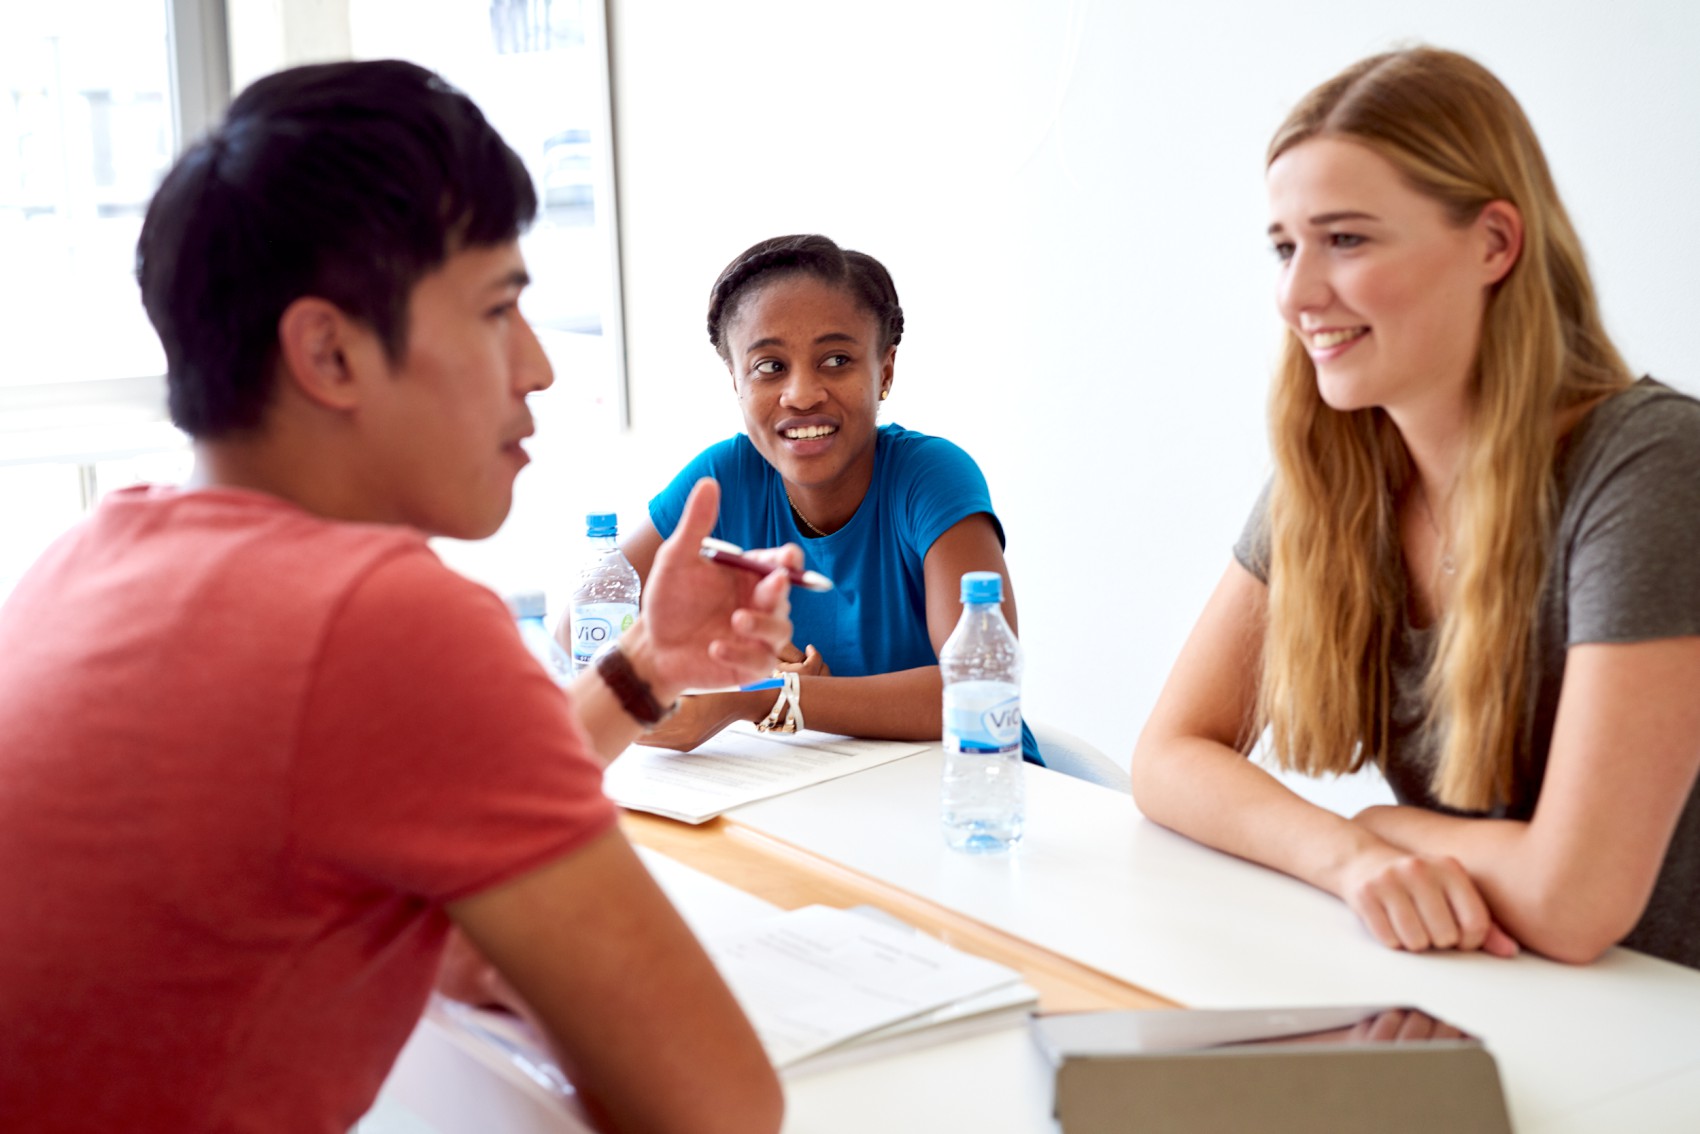 Zwei Studentinnen und ein Student sitzen an einem Tisch und unterhalten sich